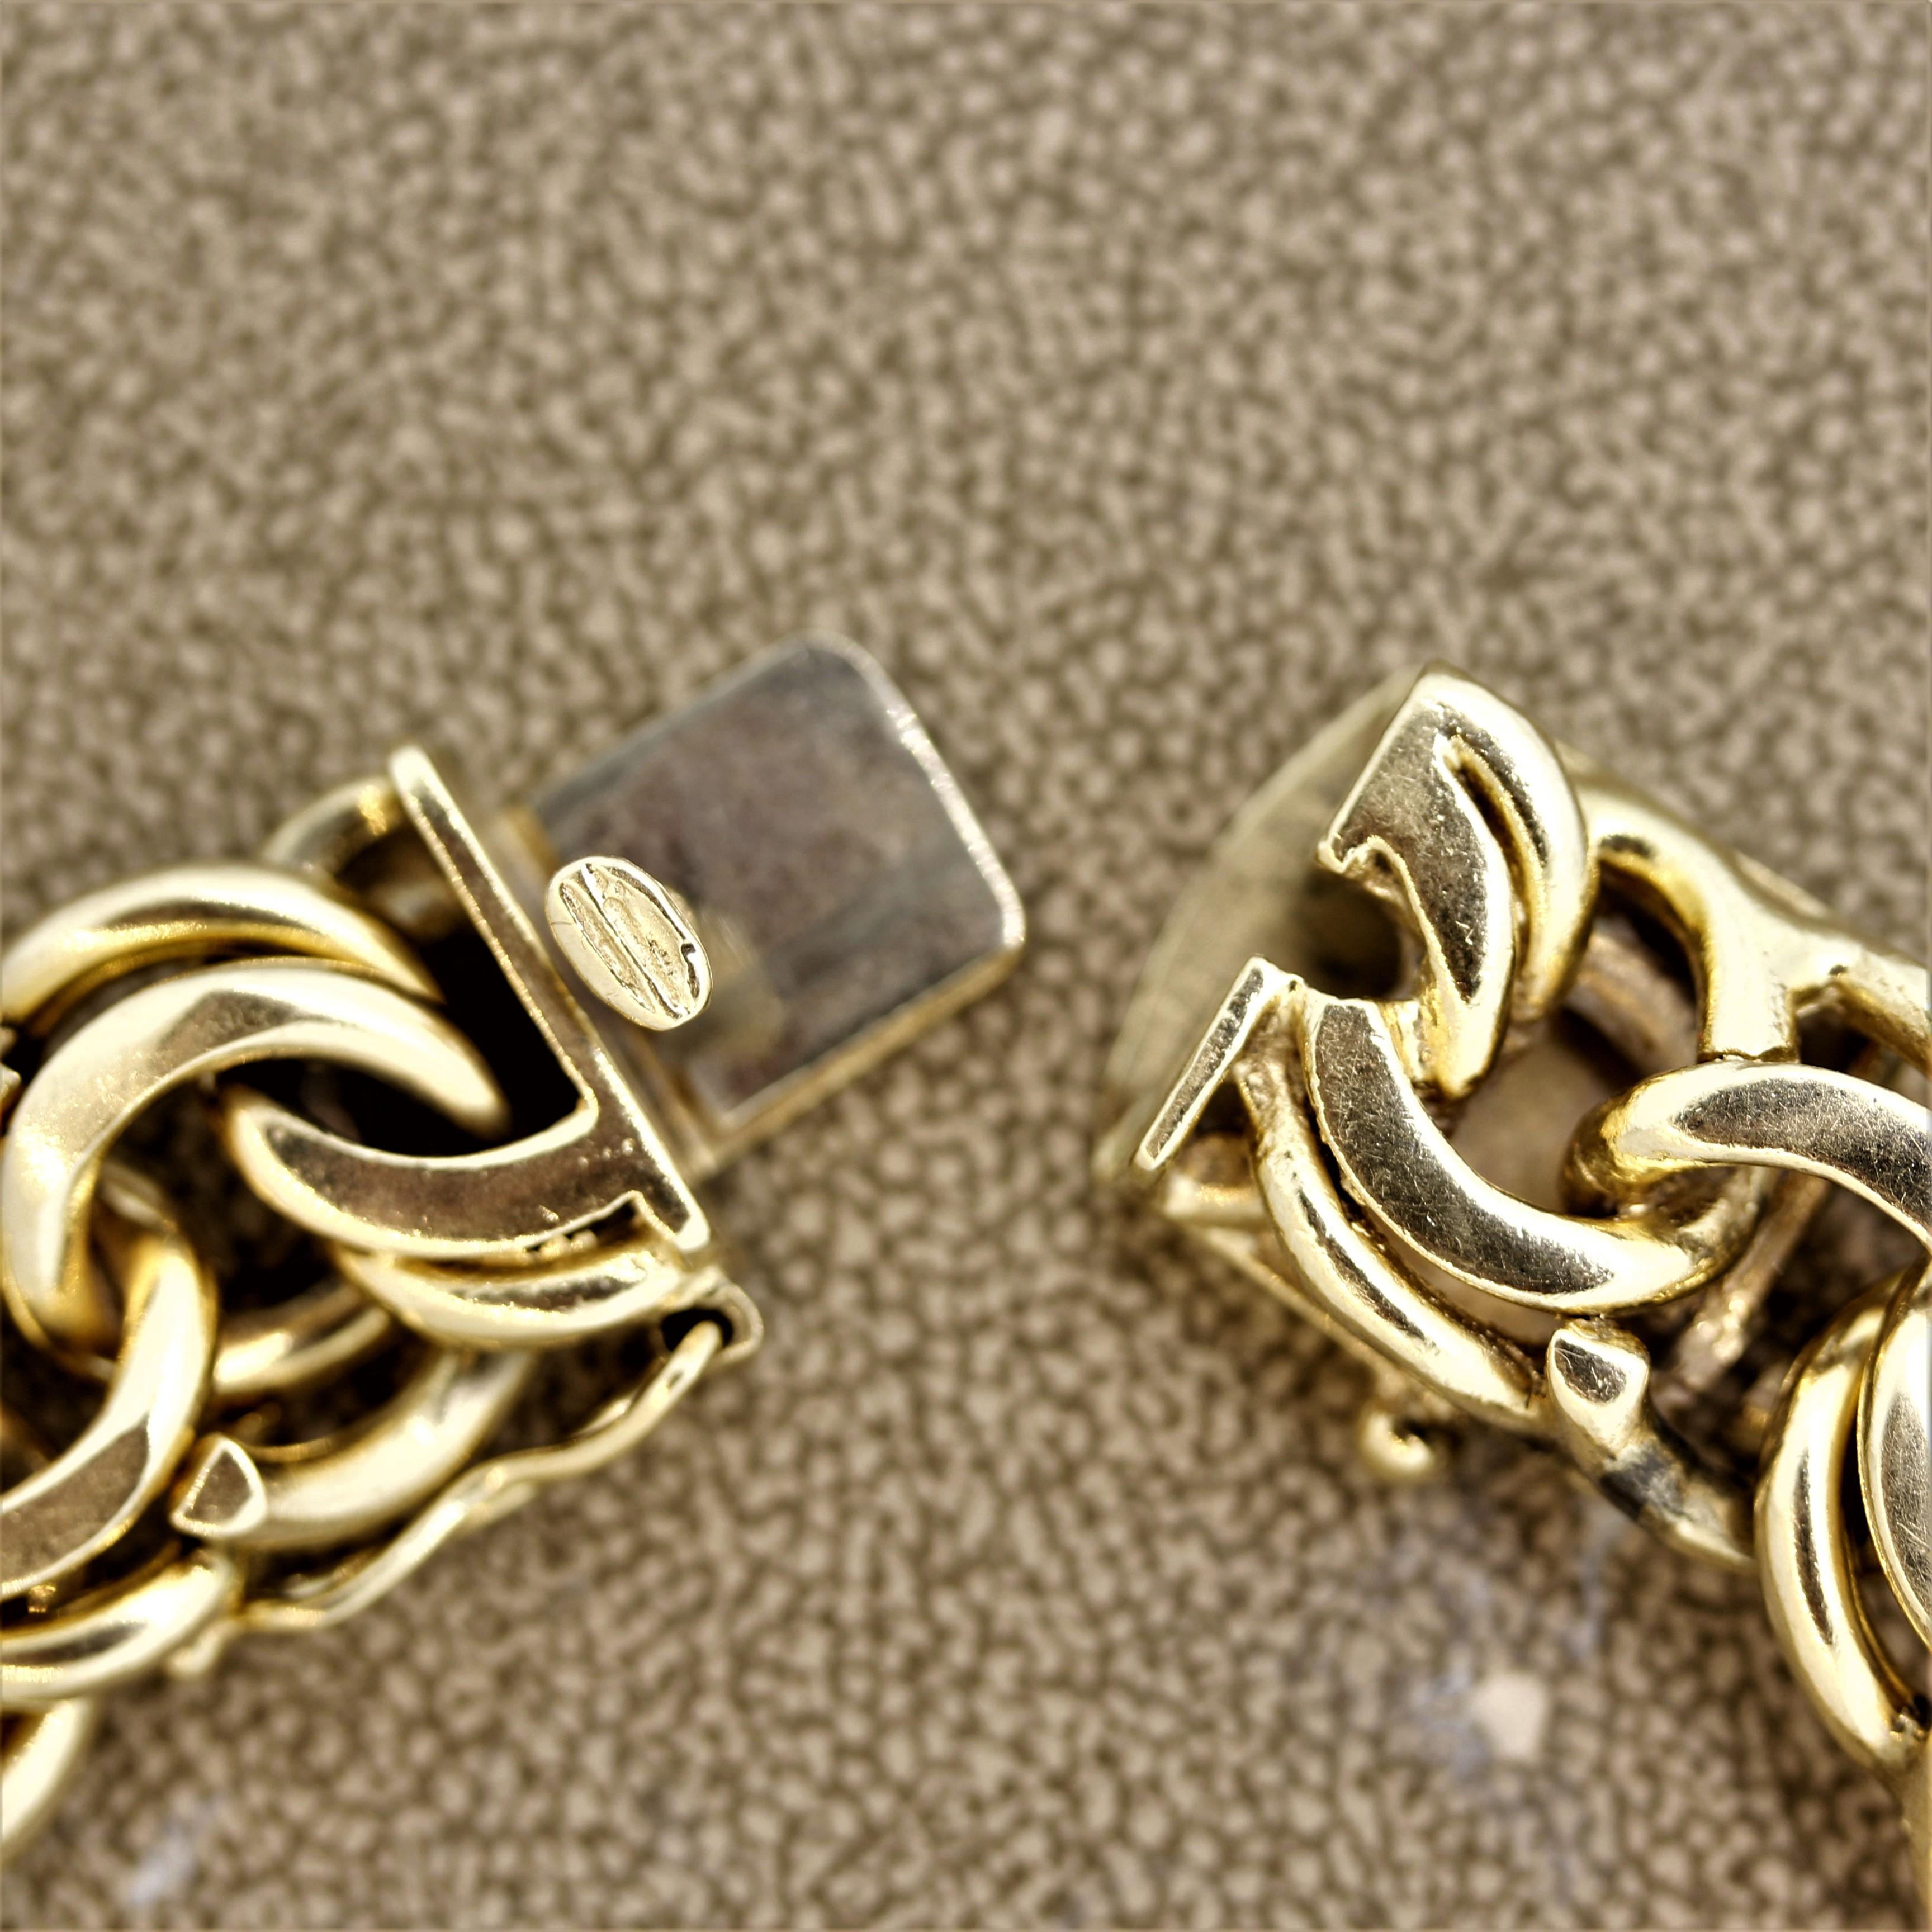 US Antique Gold Coin Charm Bracelet 3